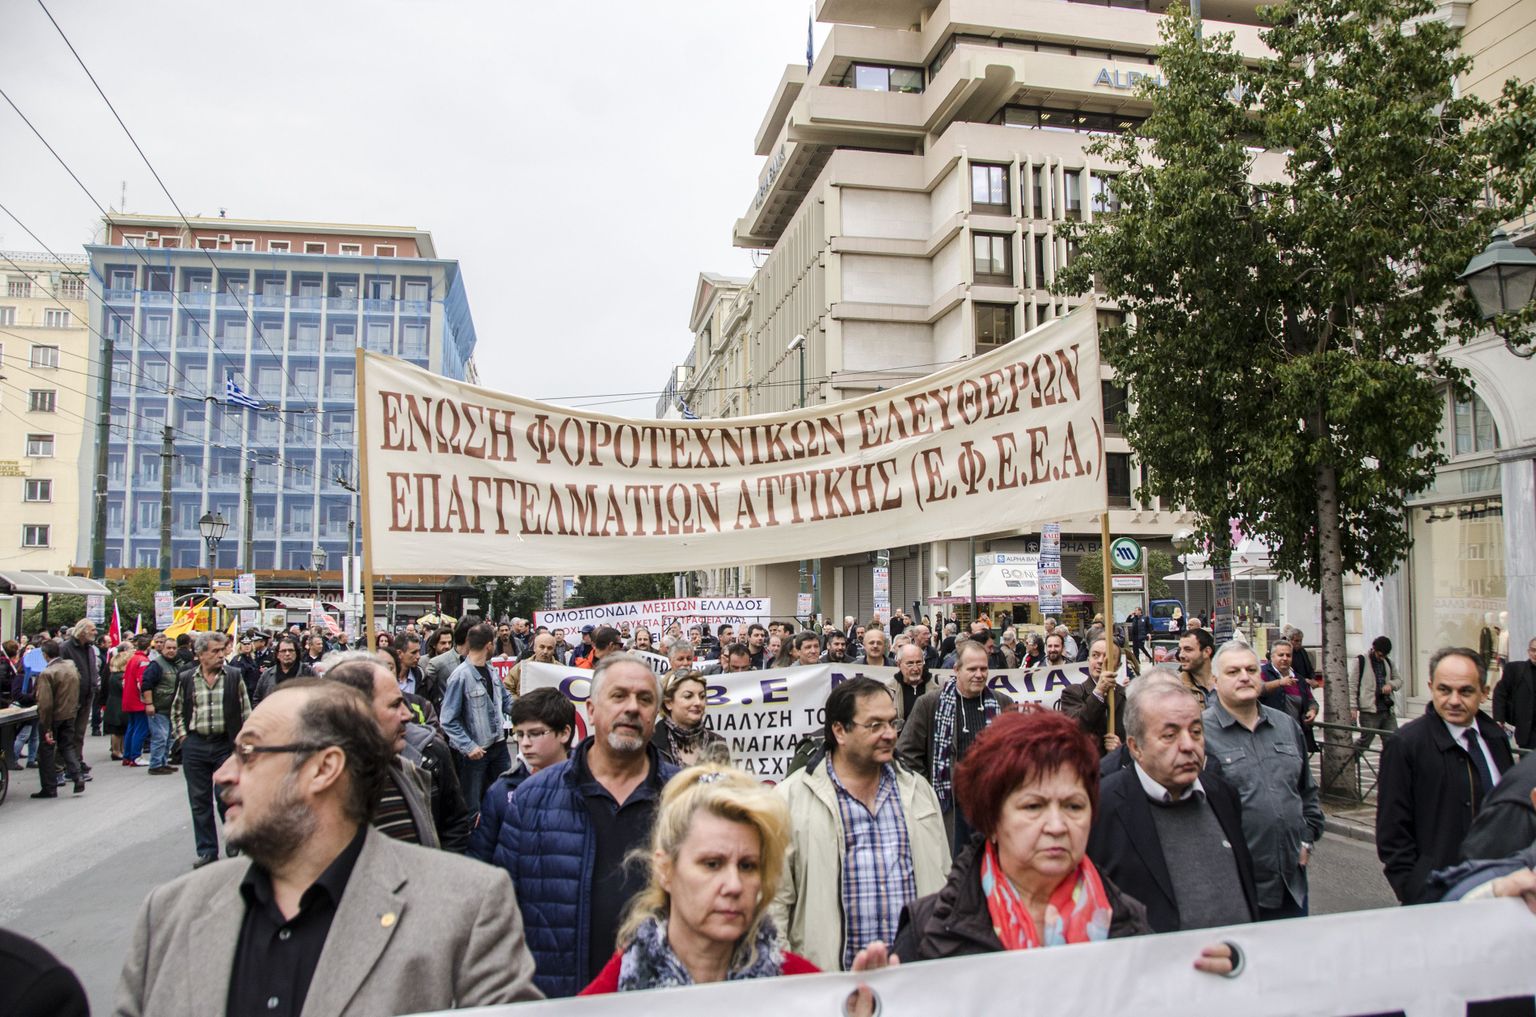 Rahuolematus viis kreeklased märtsi alguses valitsusevastasele demonstratsioonile.